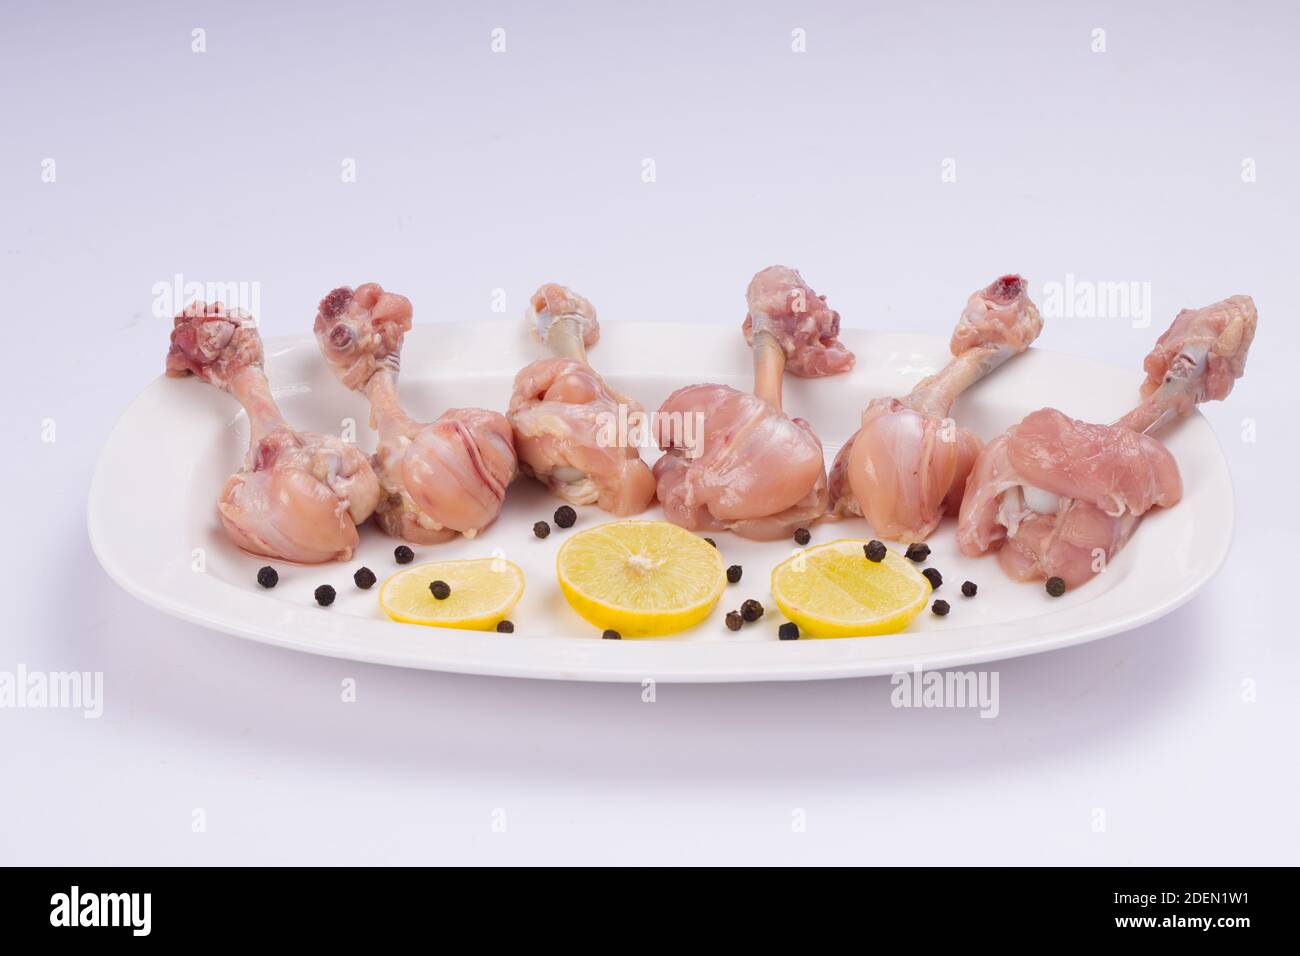 Rohes Huhn Lollipop, sechs Stücke Huhn Lollipop auf einer Portion weißen Teller mit Zitronenscheiben und schwarzem Pfeffer auf weißem Hintergrund angeordnet Stockfoto